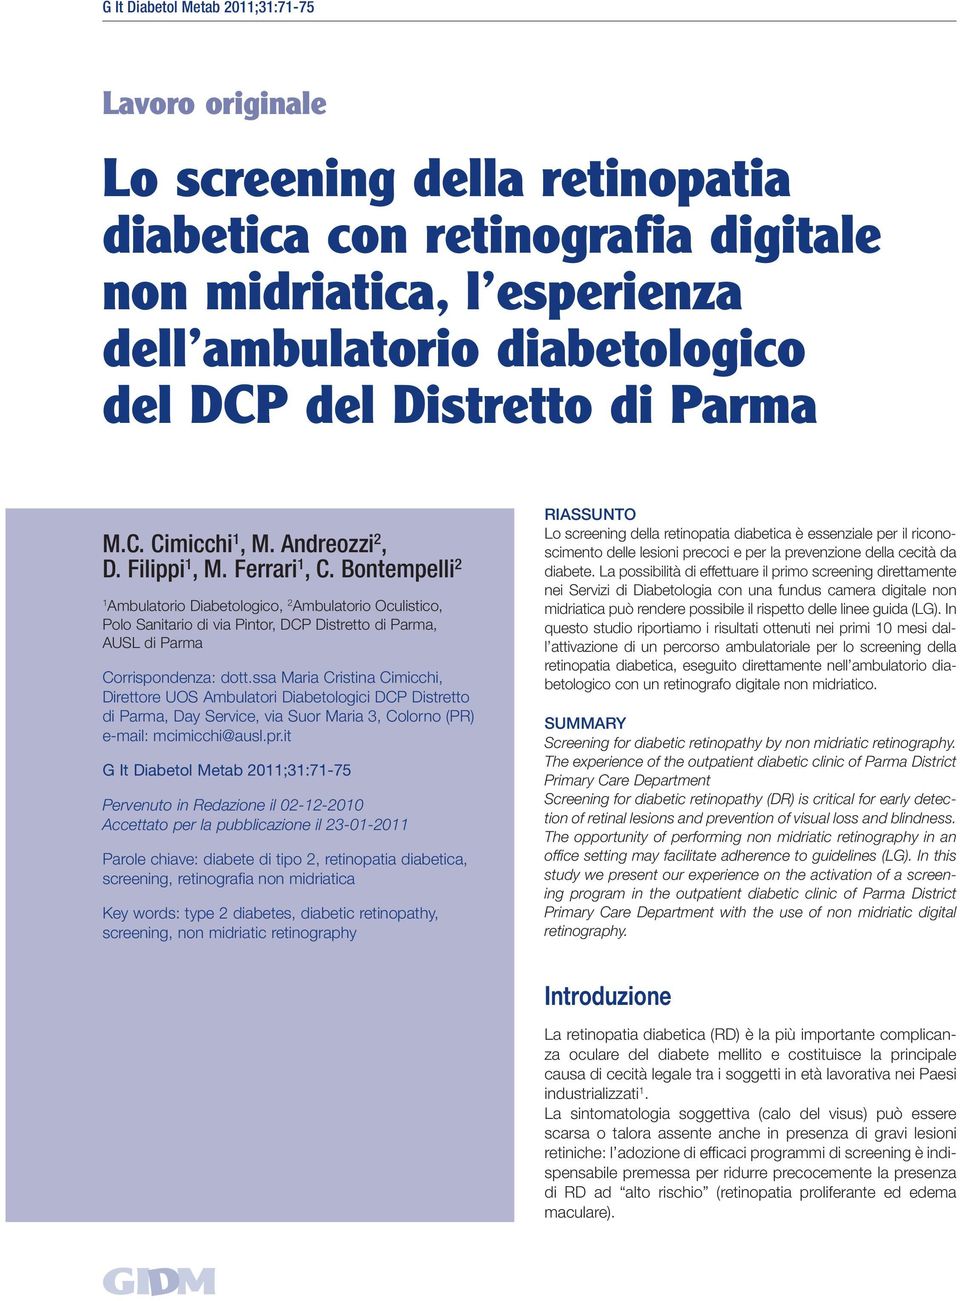 Bontempelli 2 1 Ambulatorio Diabetologico, 2 Ambulatorio Oculistico, Polo Sanitario di via Pintor, DCP Distretto di Parma, AUSL di Parma Corrispondenza: dott.